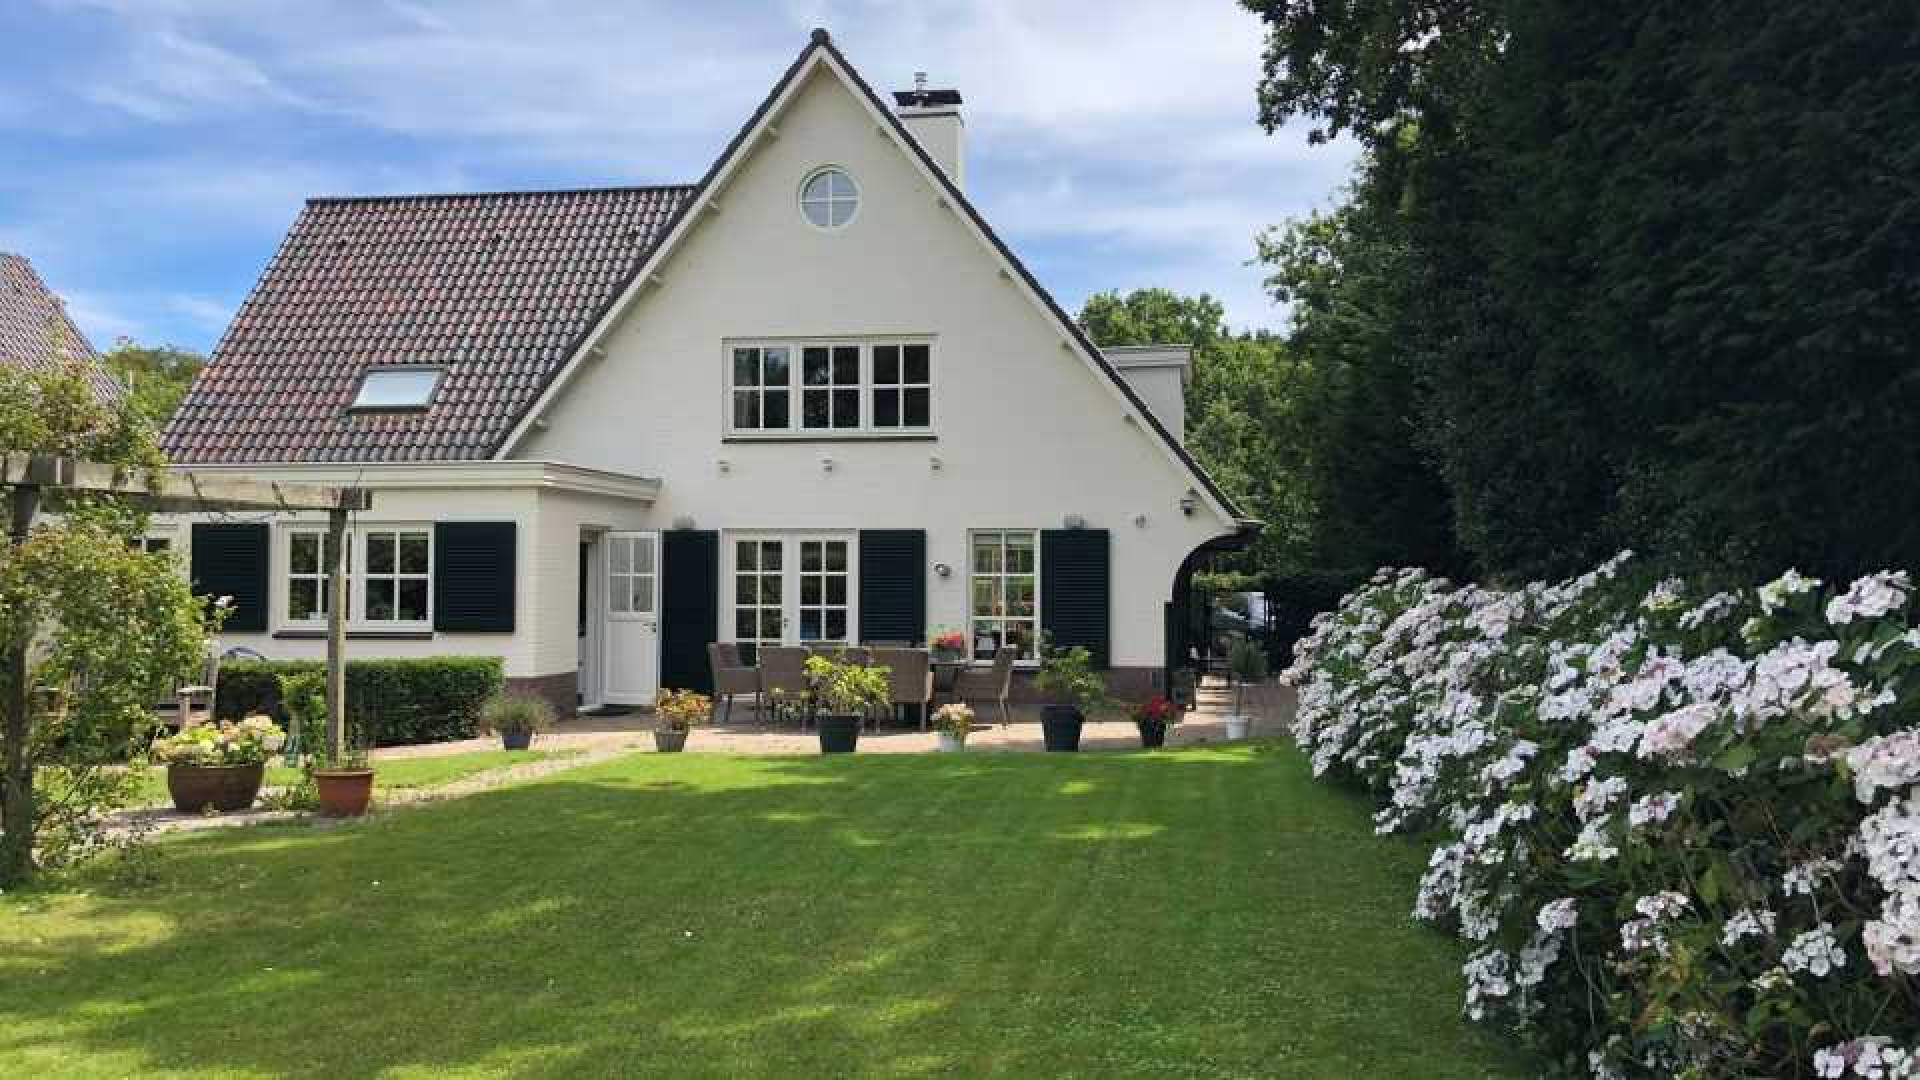 Ex vrouw van Dirk Kuijt koopt net als Dirk luxe villa op landgoed in Noordwijk. Zie foto's 1